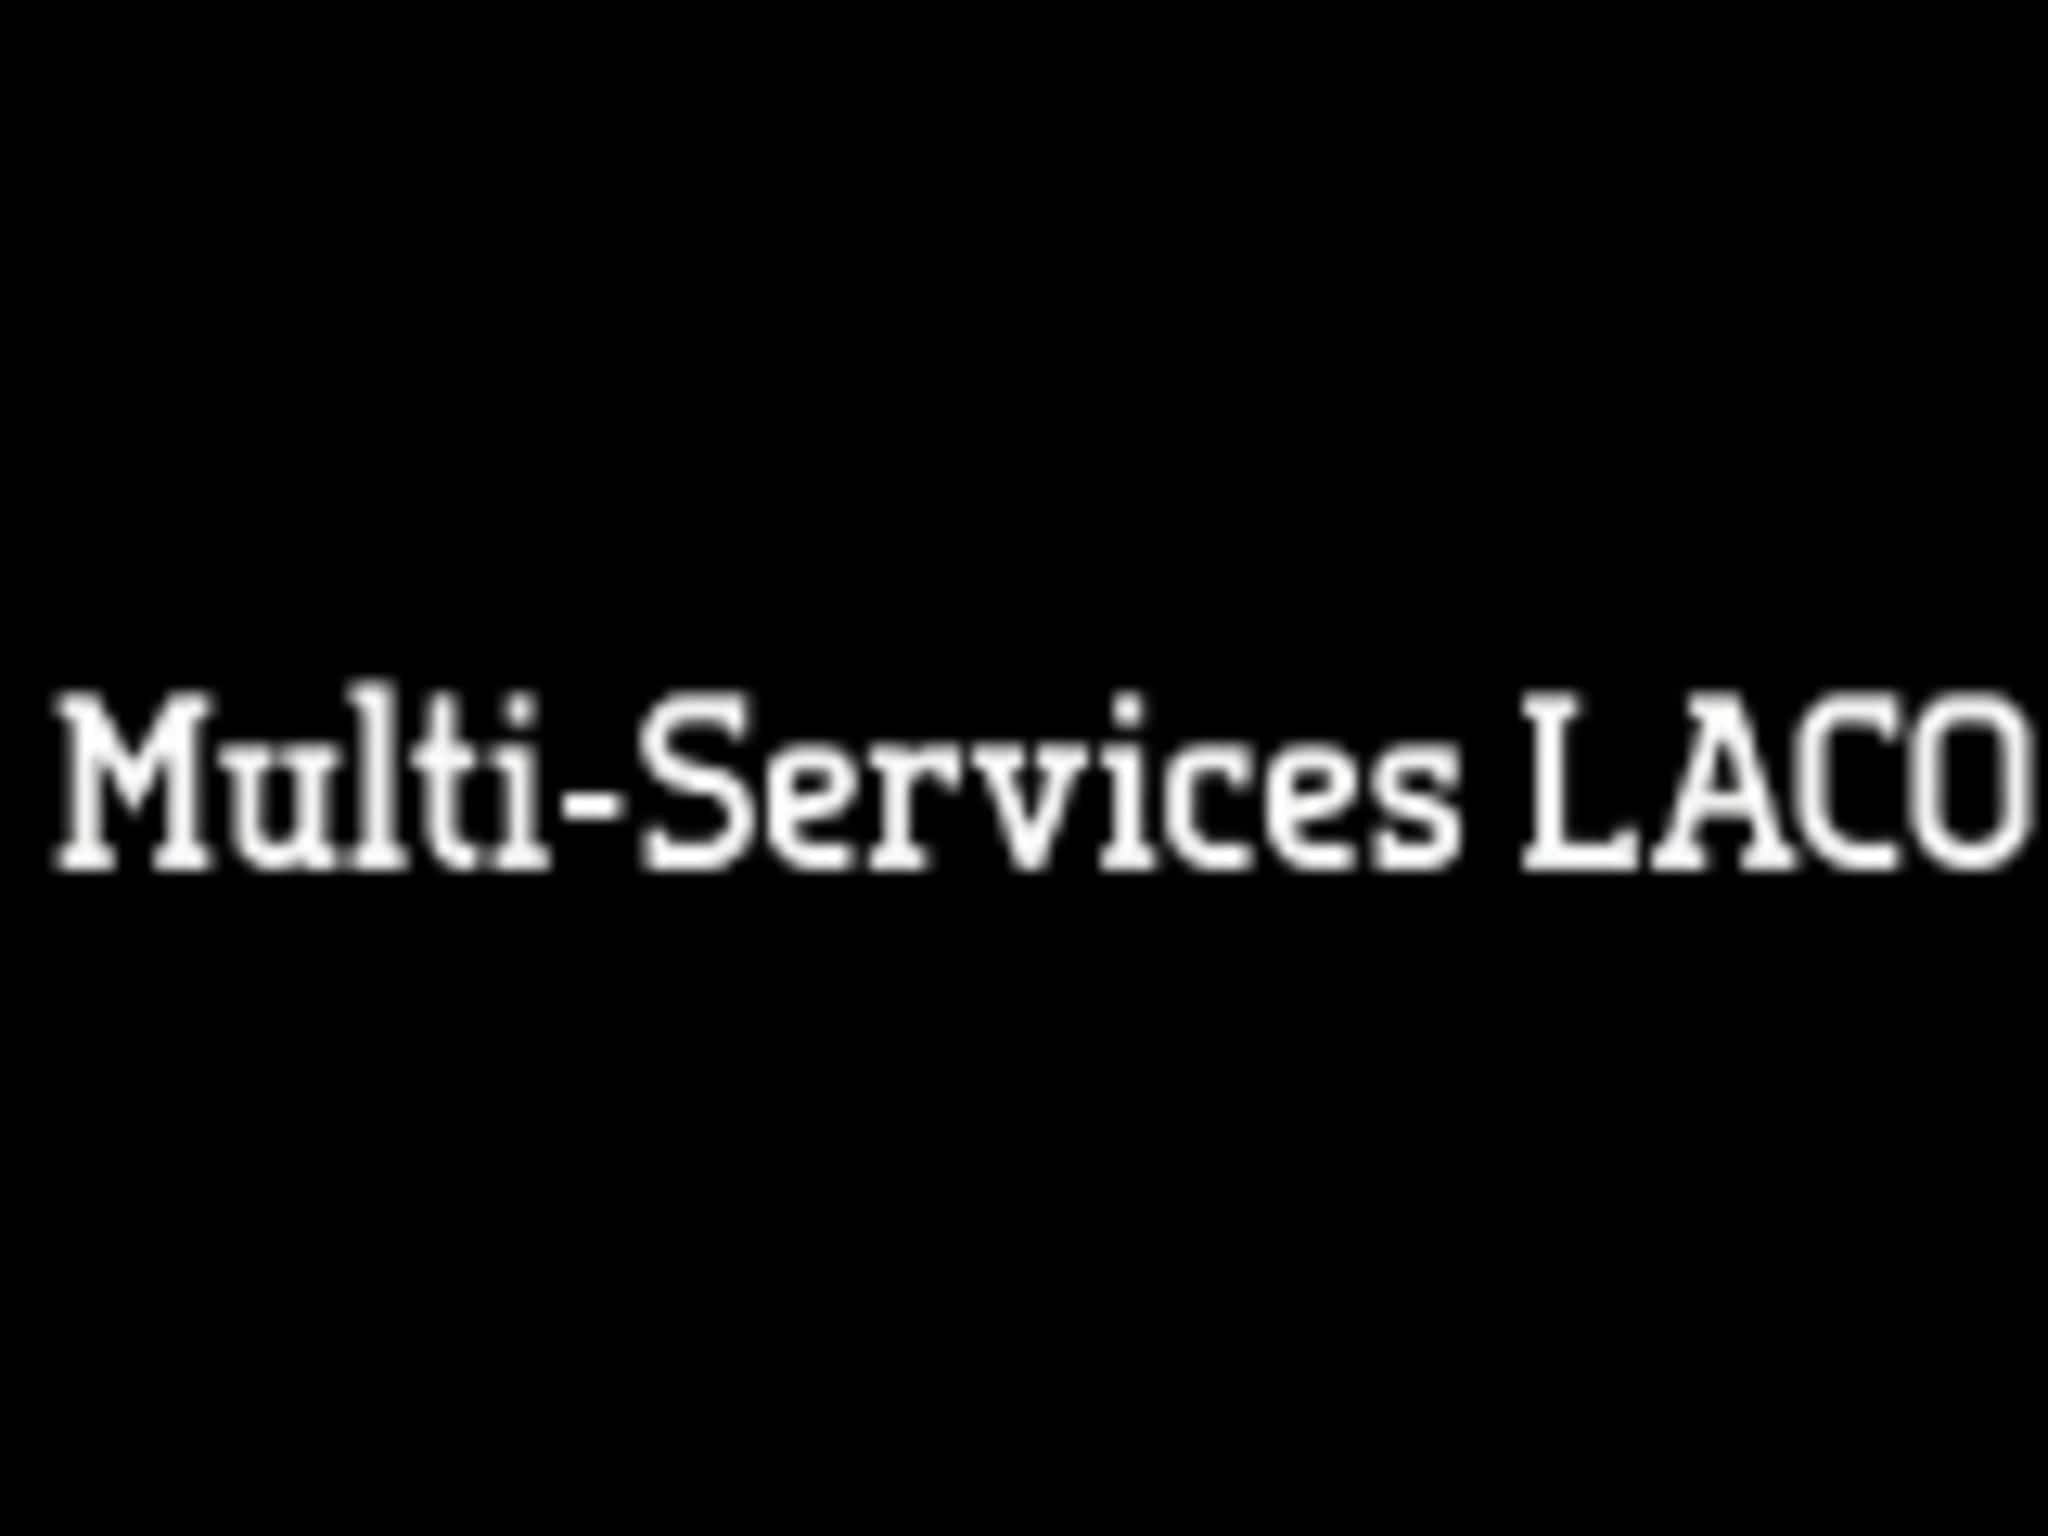 photo Multi-Services LACO